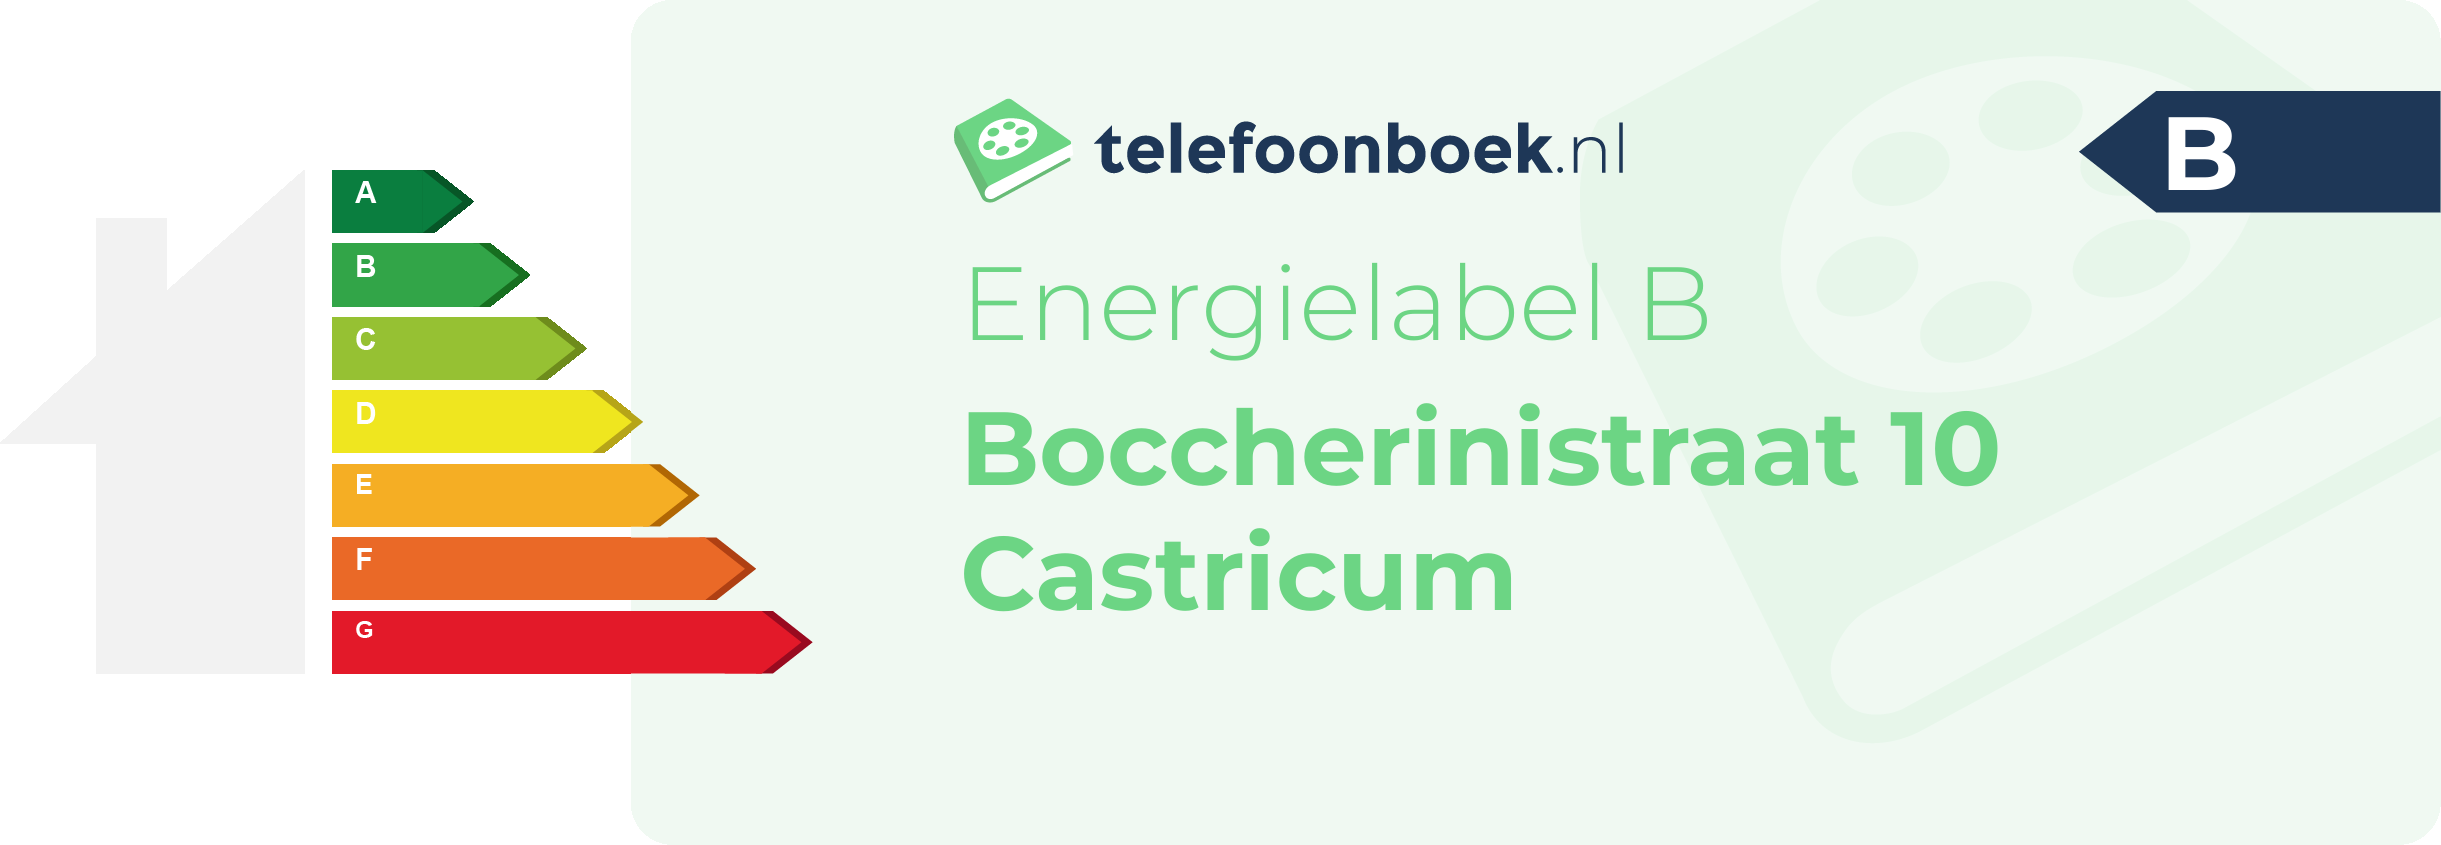 Energielabel Boccherinistraat 10 Castricum